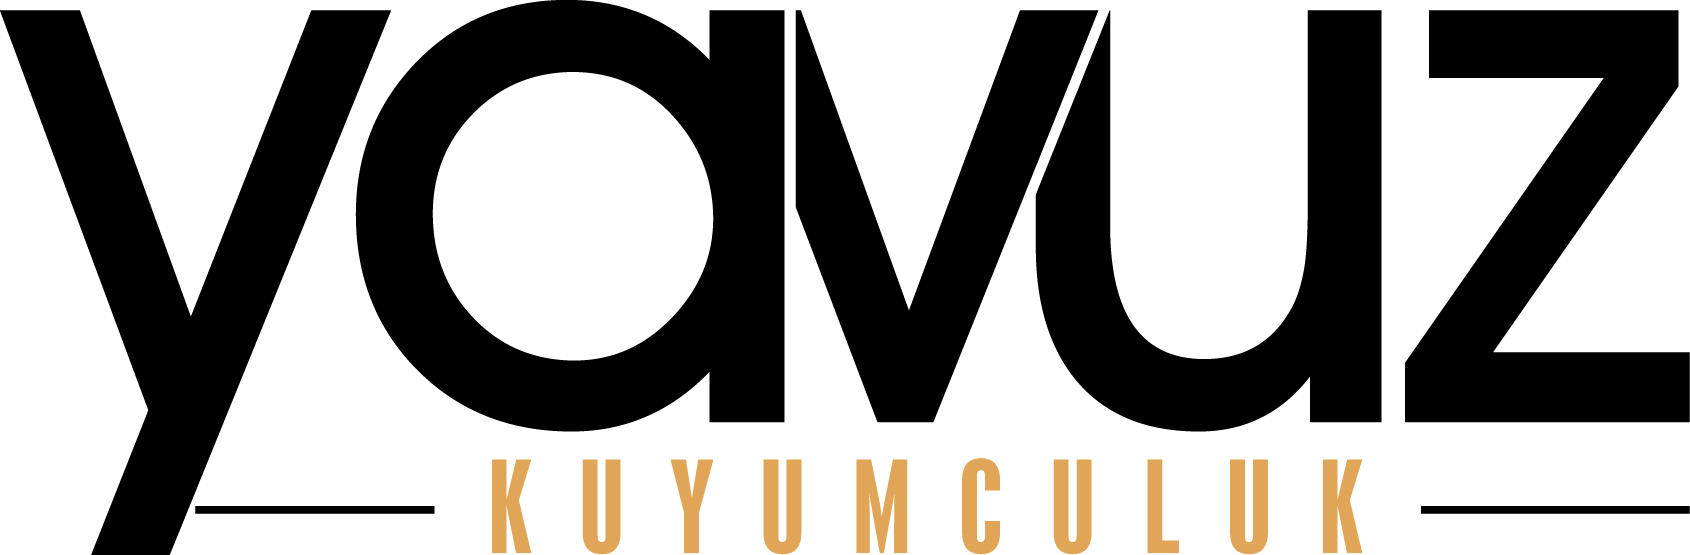 yavuz-main-logo.png (19 KB)